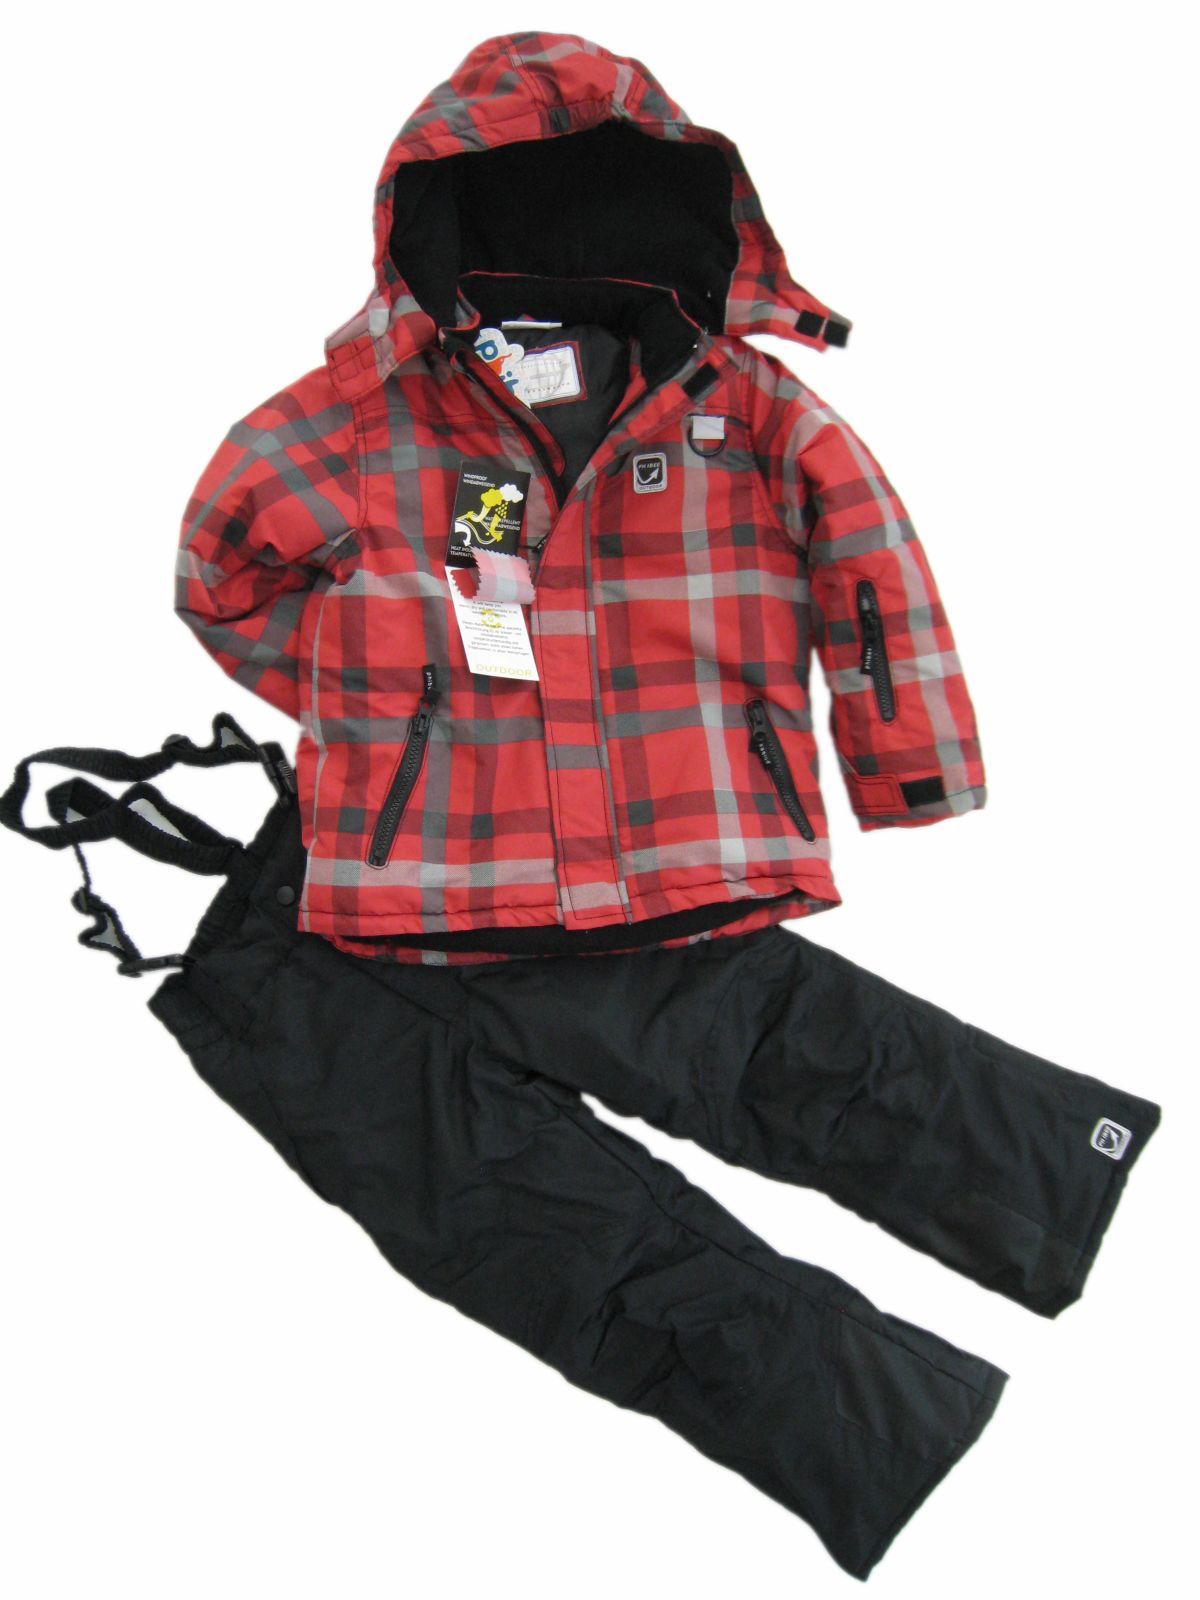 women Children's clothing ski suit child sports set outdoor jacket set girl wadded jacket